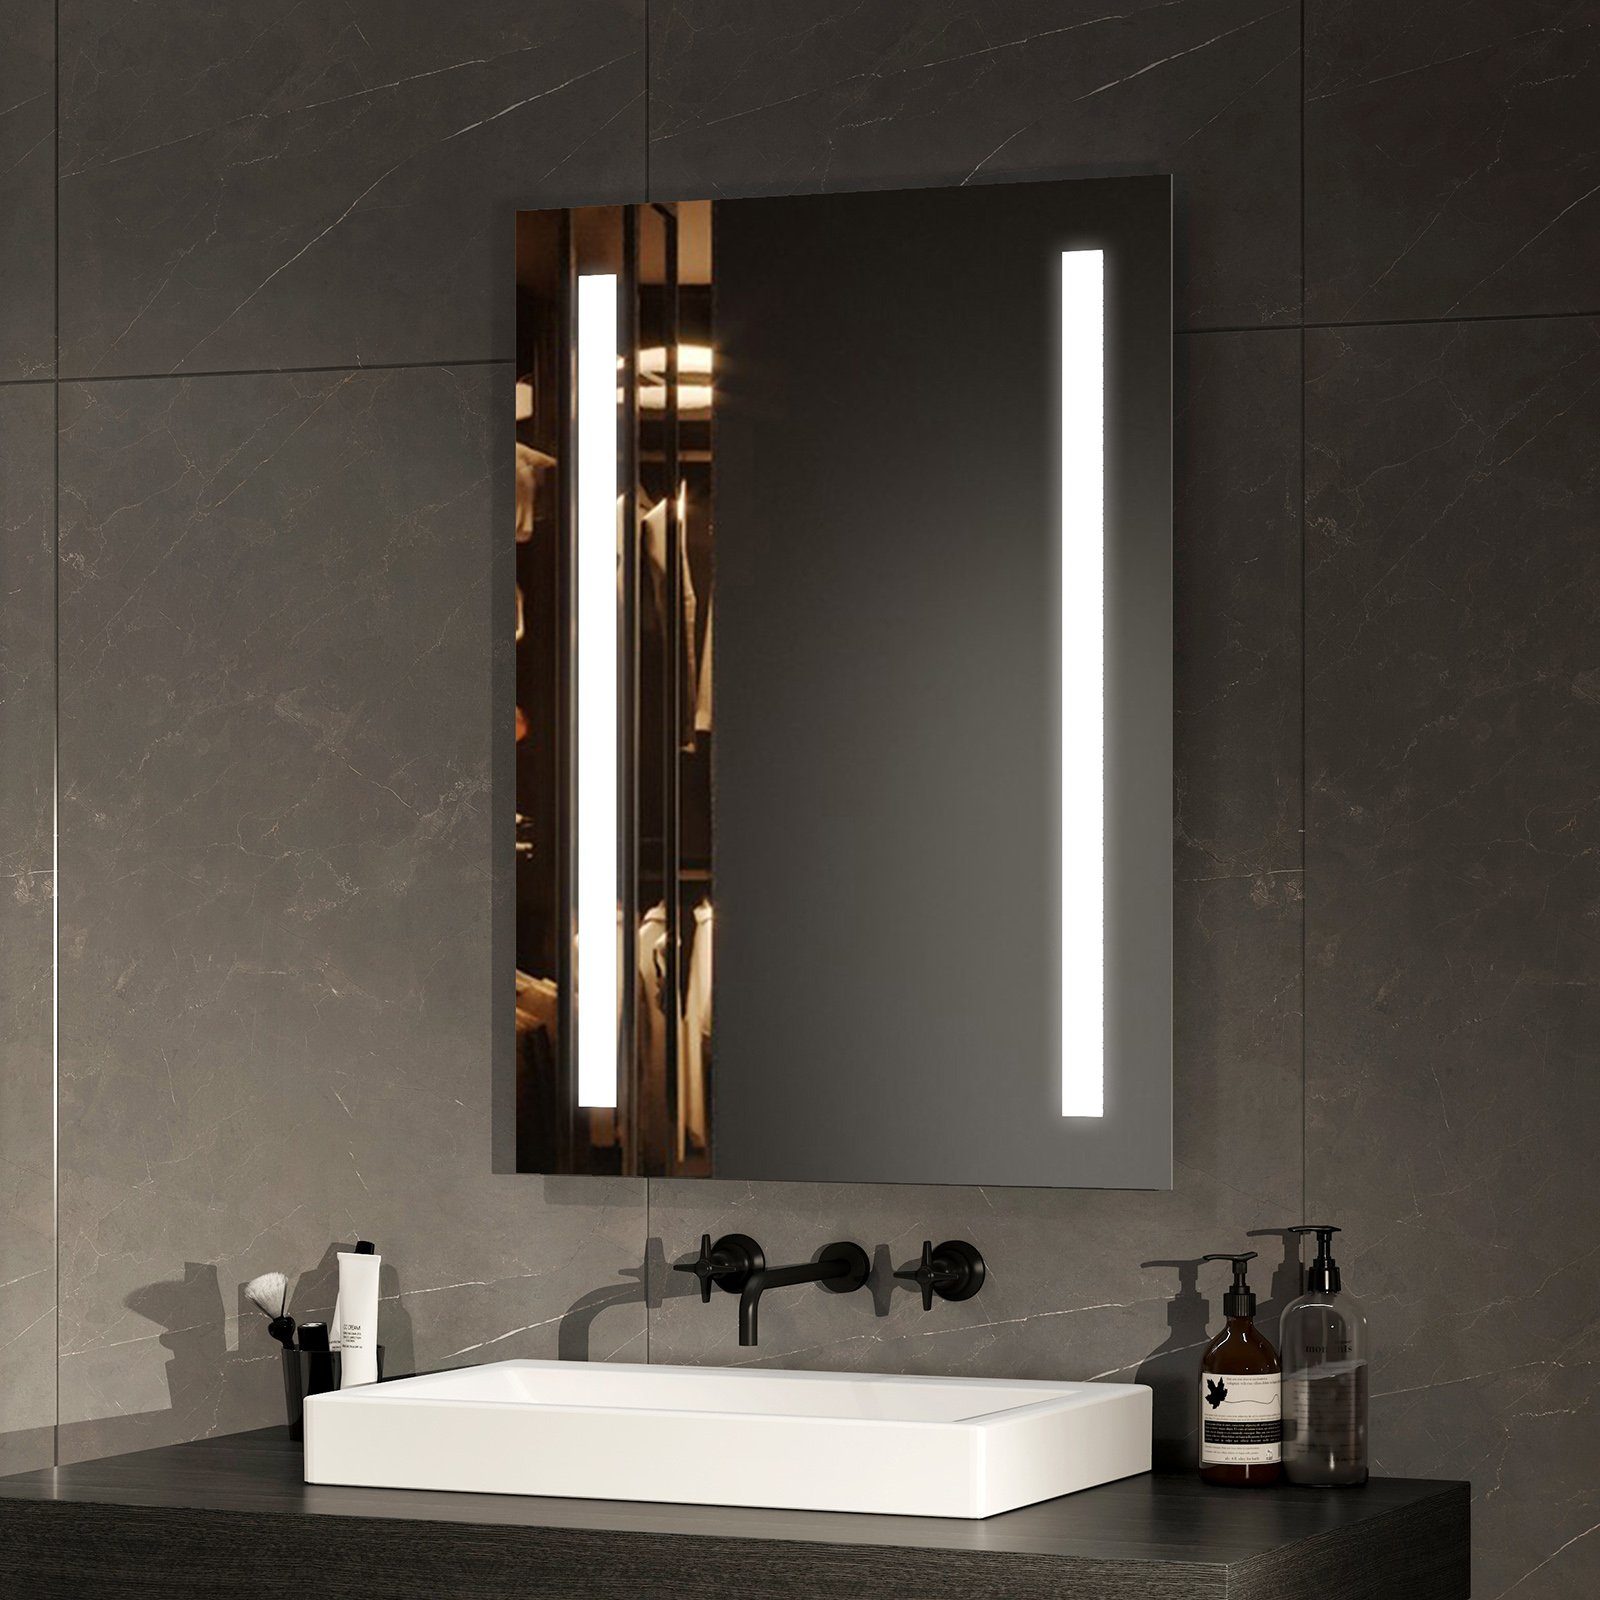 EMKE Badspiegel LED Badspiegel Wandspiegel mit Beleuchtung Lichtspiegel, mit Taste und Beschlagfrei, 2 Lichtfarbe Warmweiß/Kaltweiß